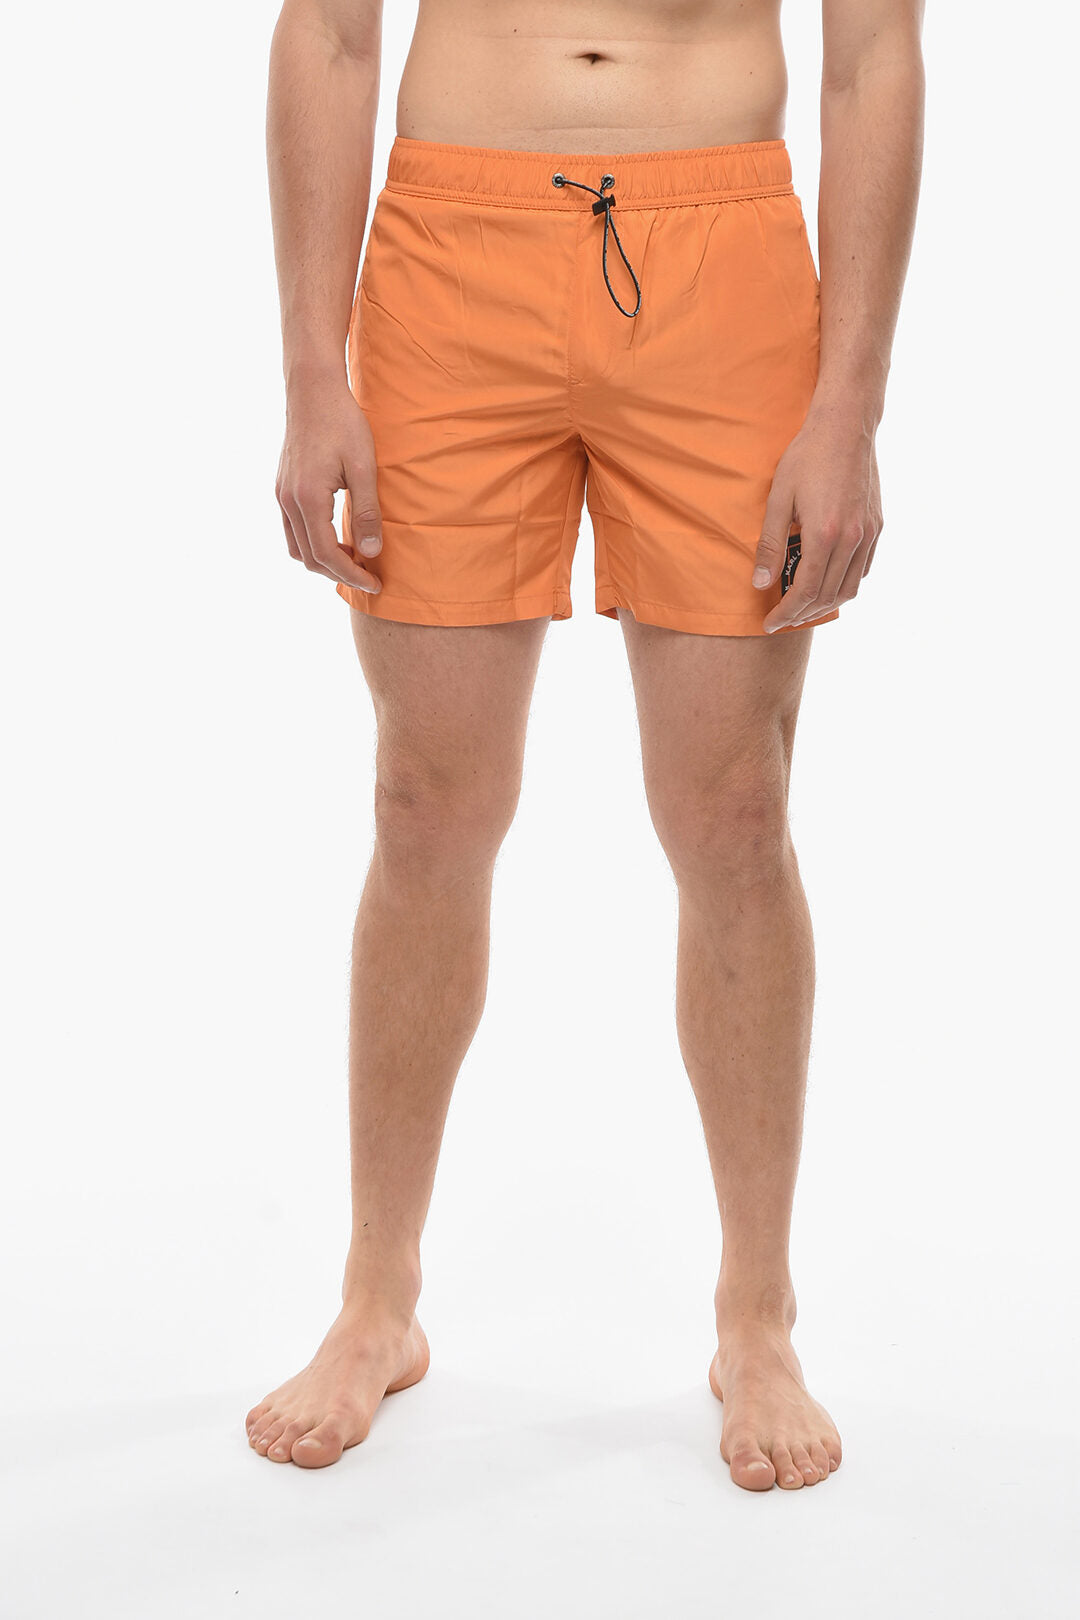 Rue st-guillame einfarbig 3-pocket orange boxer schwimmanzug